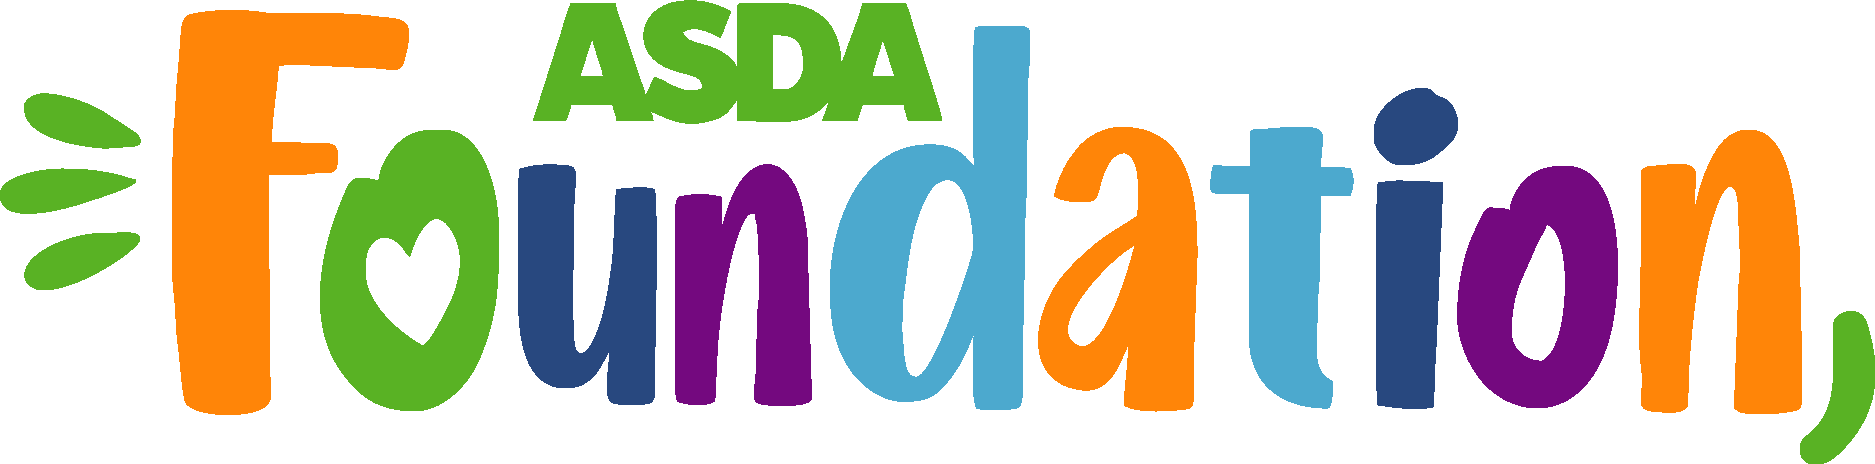 ASDA Foundation Logo Vector